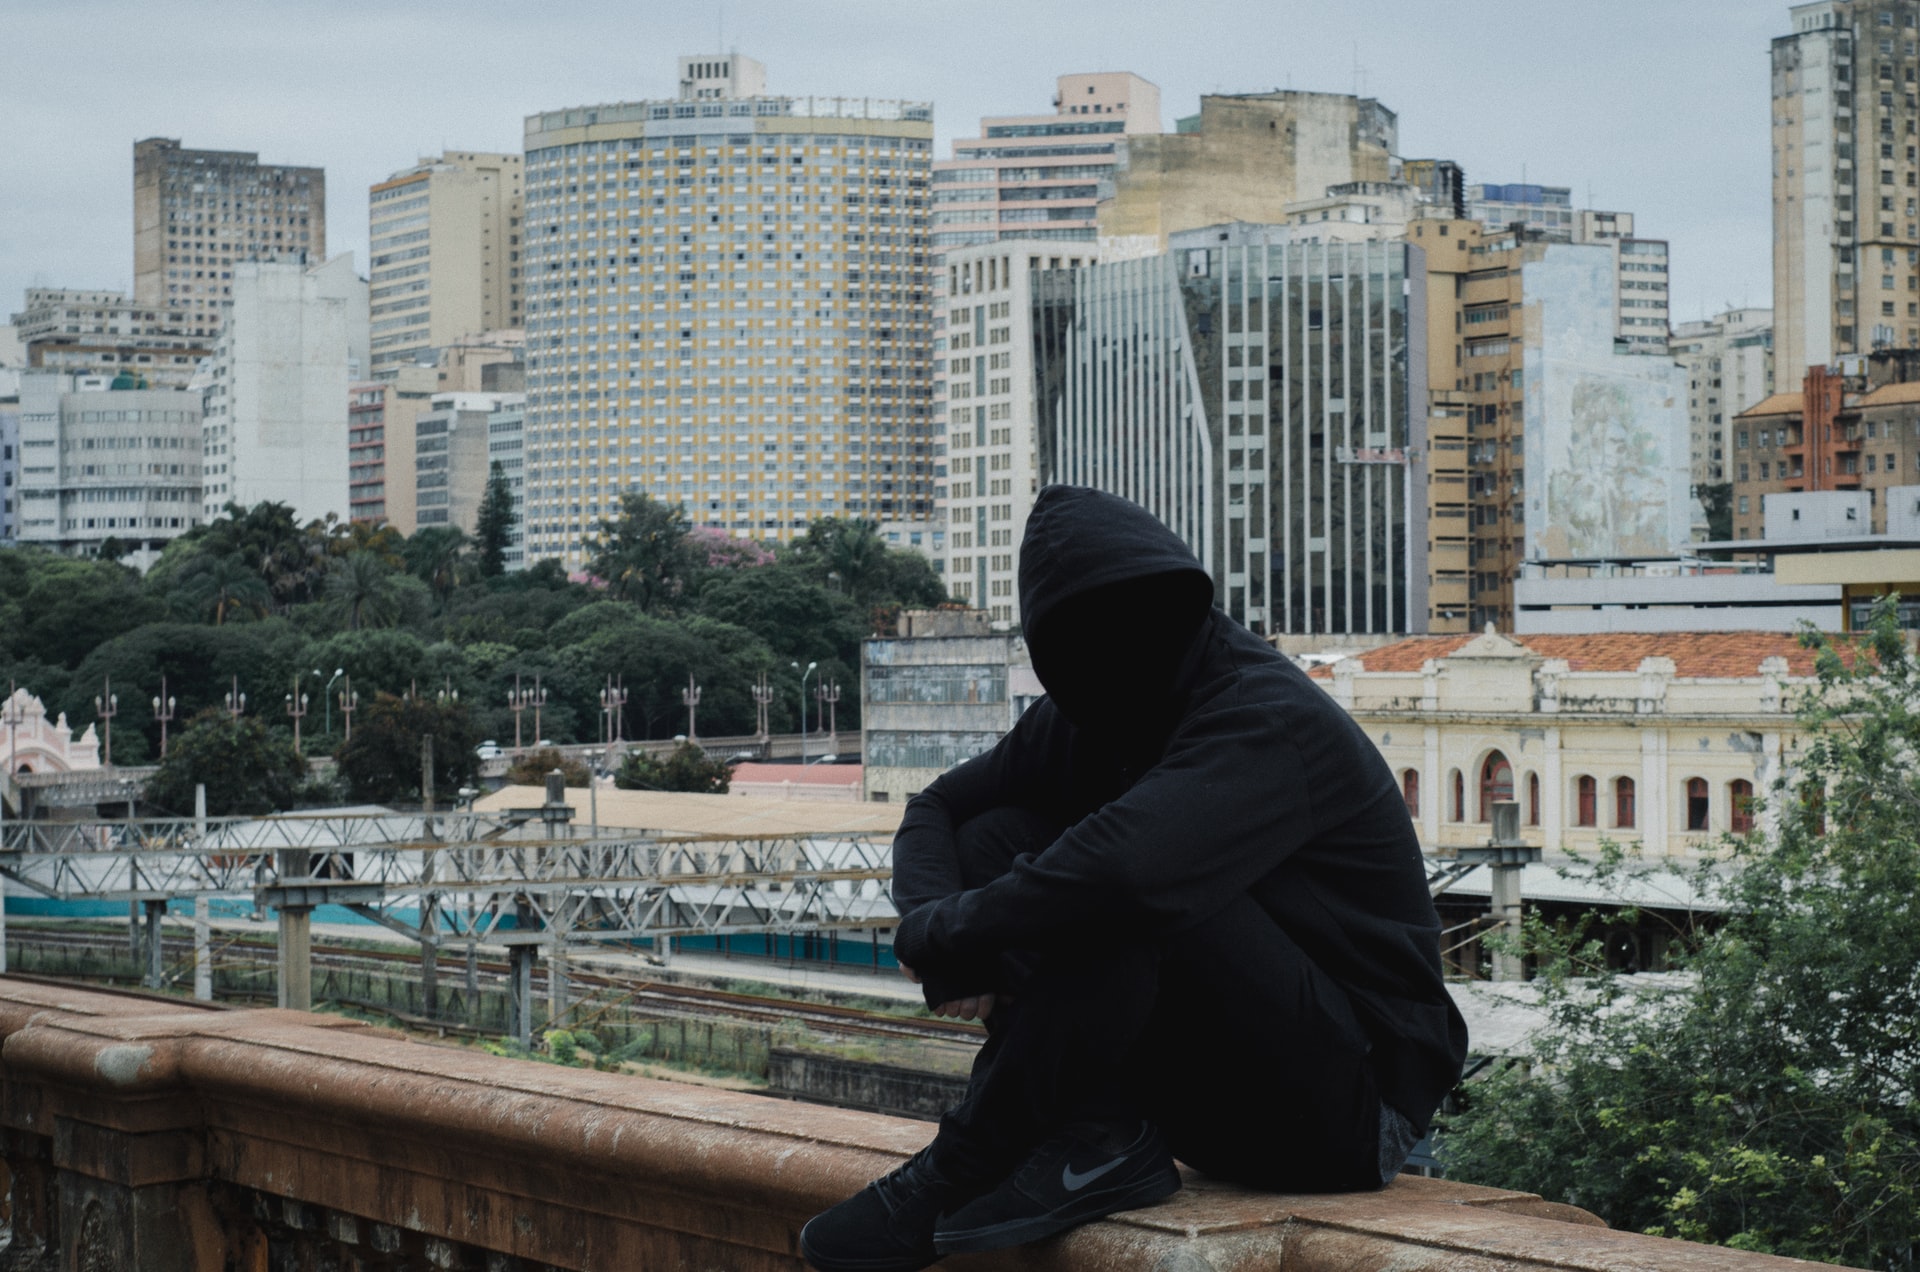 Грустный чувак в капюшоне на фоне сурового мегаполиса – куда ж нам без него, если мы пишем об анонимности – вольная интерпретация стоковой фотографии. Фото: Daniel Monteiro // Unsplash (CC BY-SA 4.0)